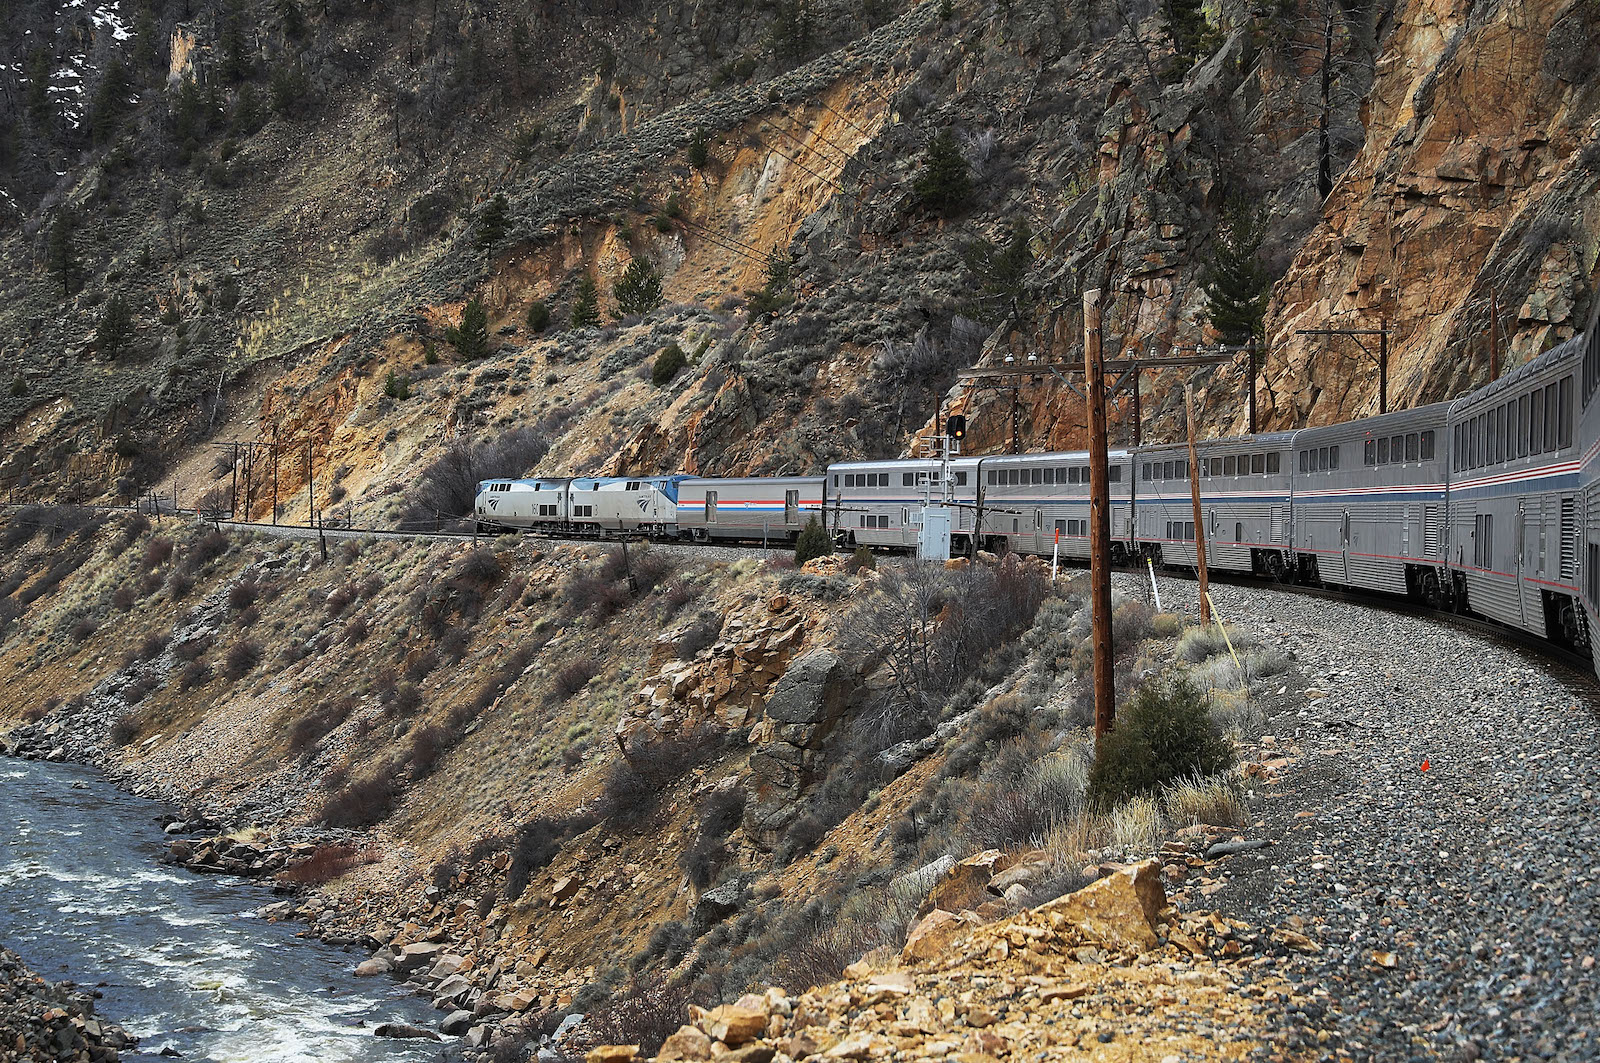 a passenger train runs alongside a rocky cliff face